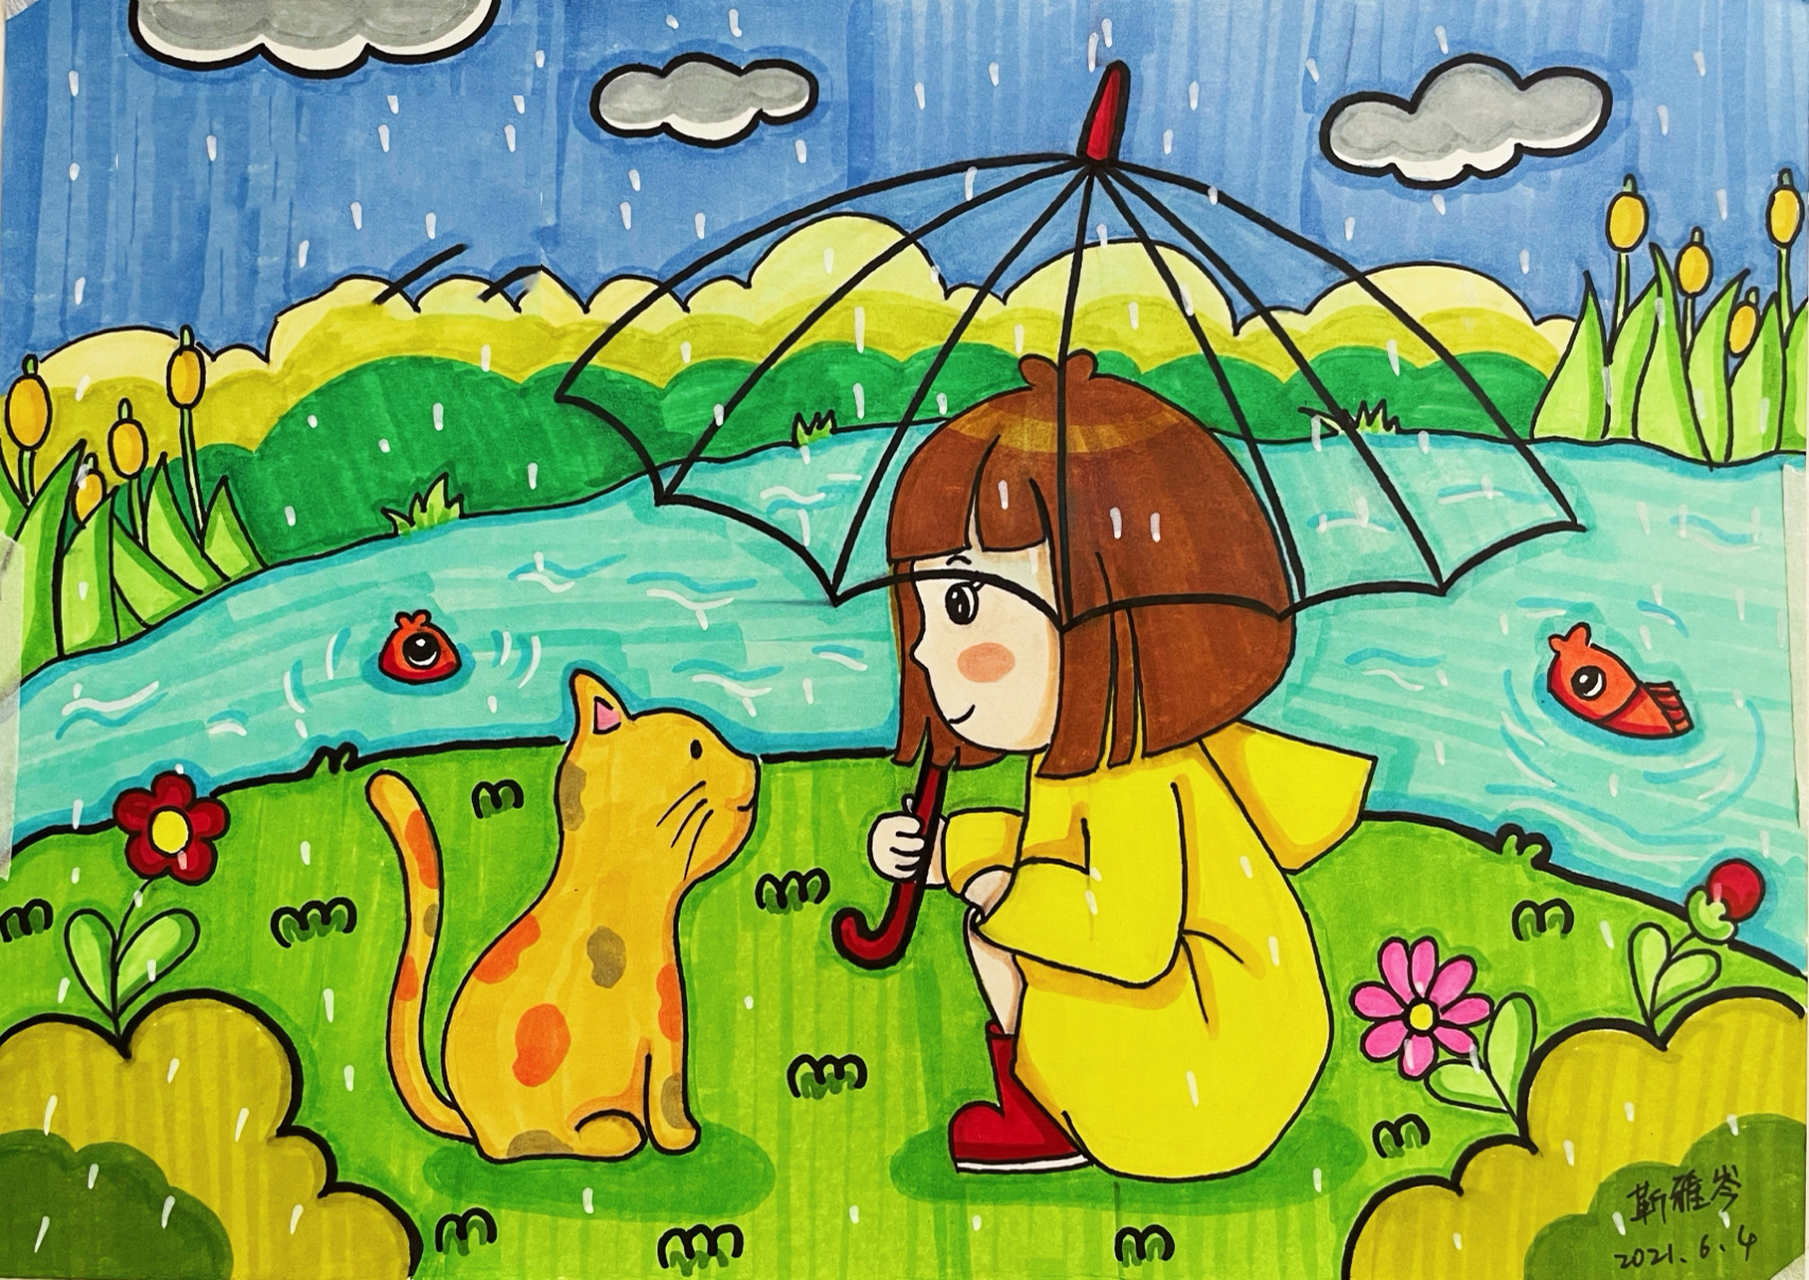 马克笔儿童画下雨天9715 幼师考编常考主题画下雨天 《下雨了》